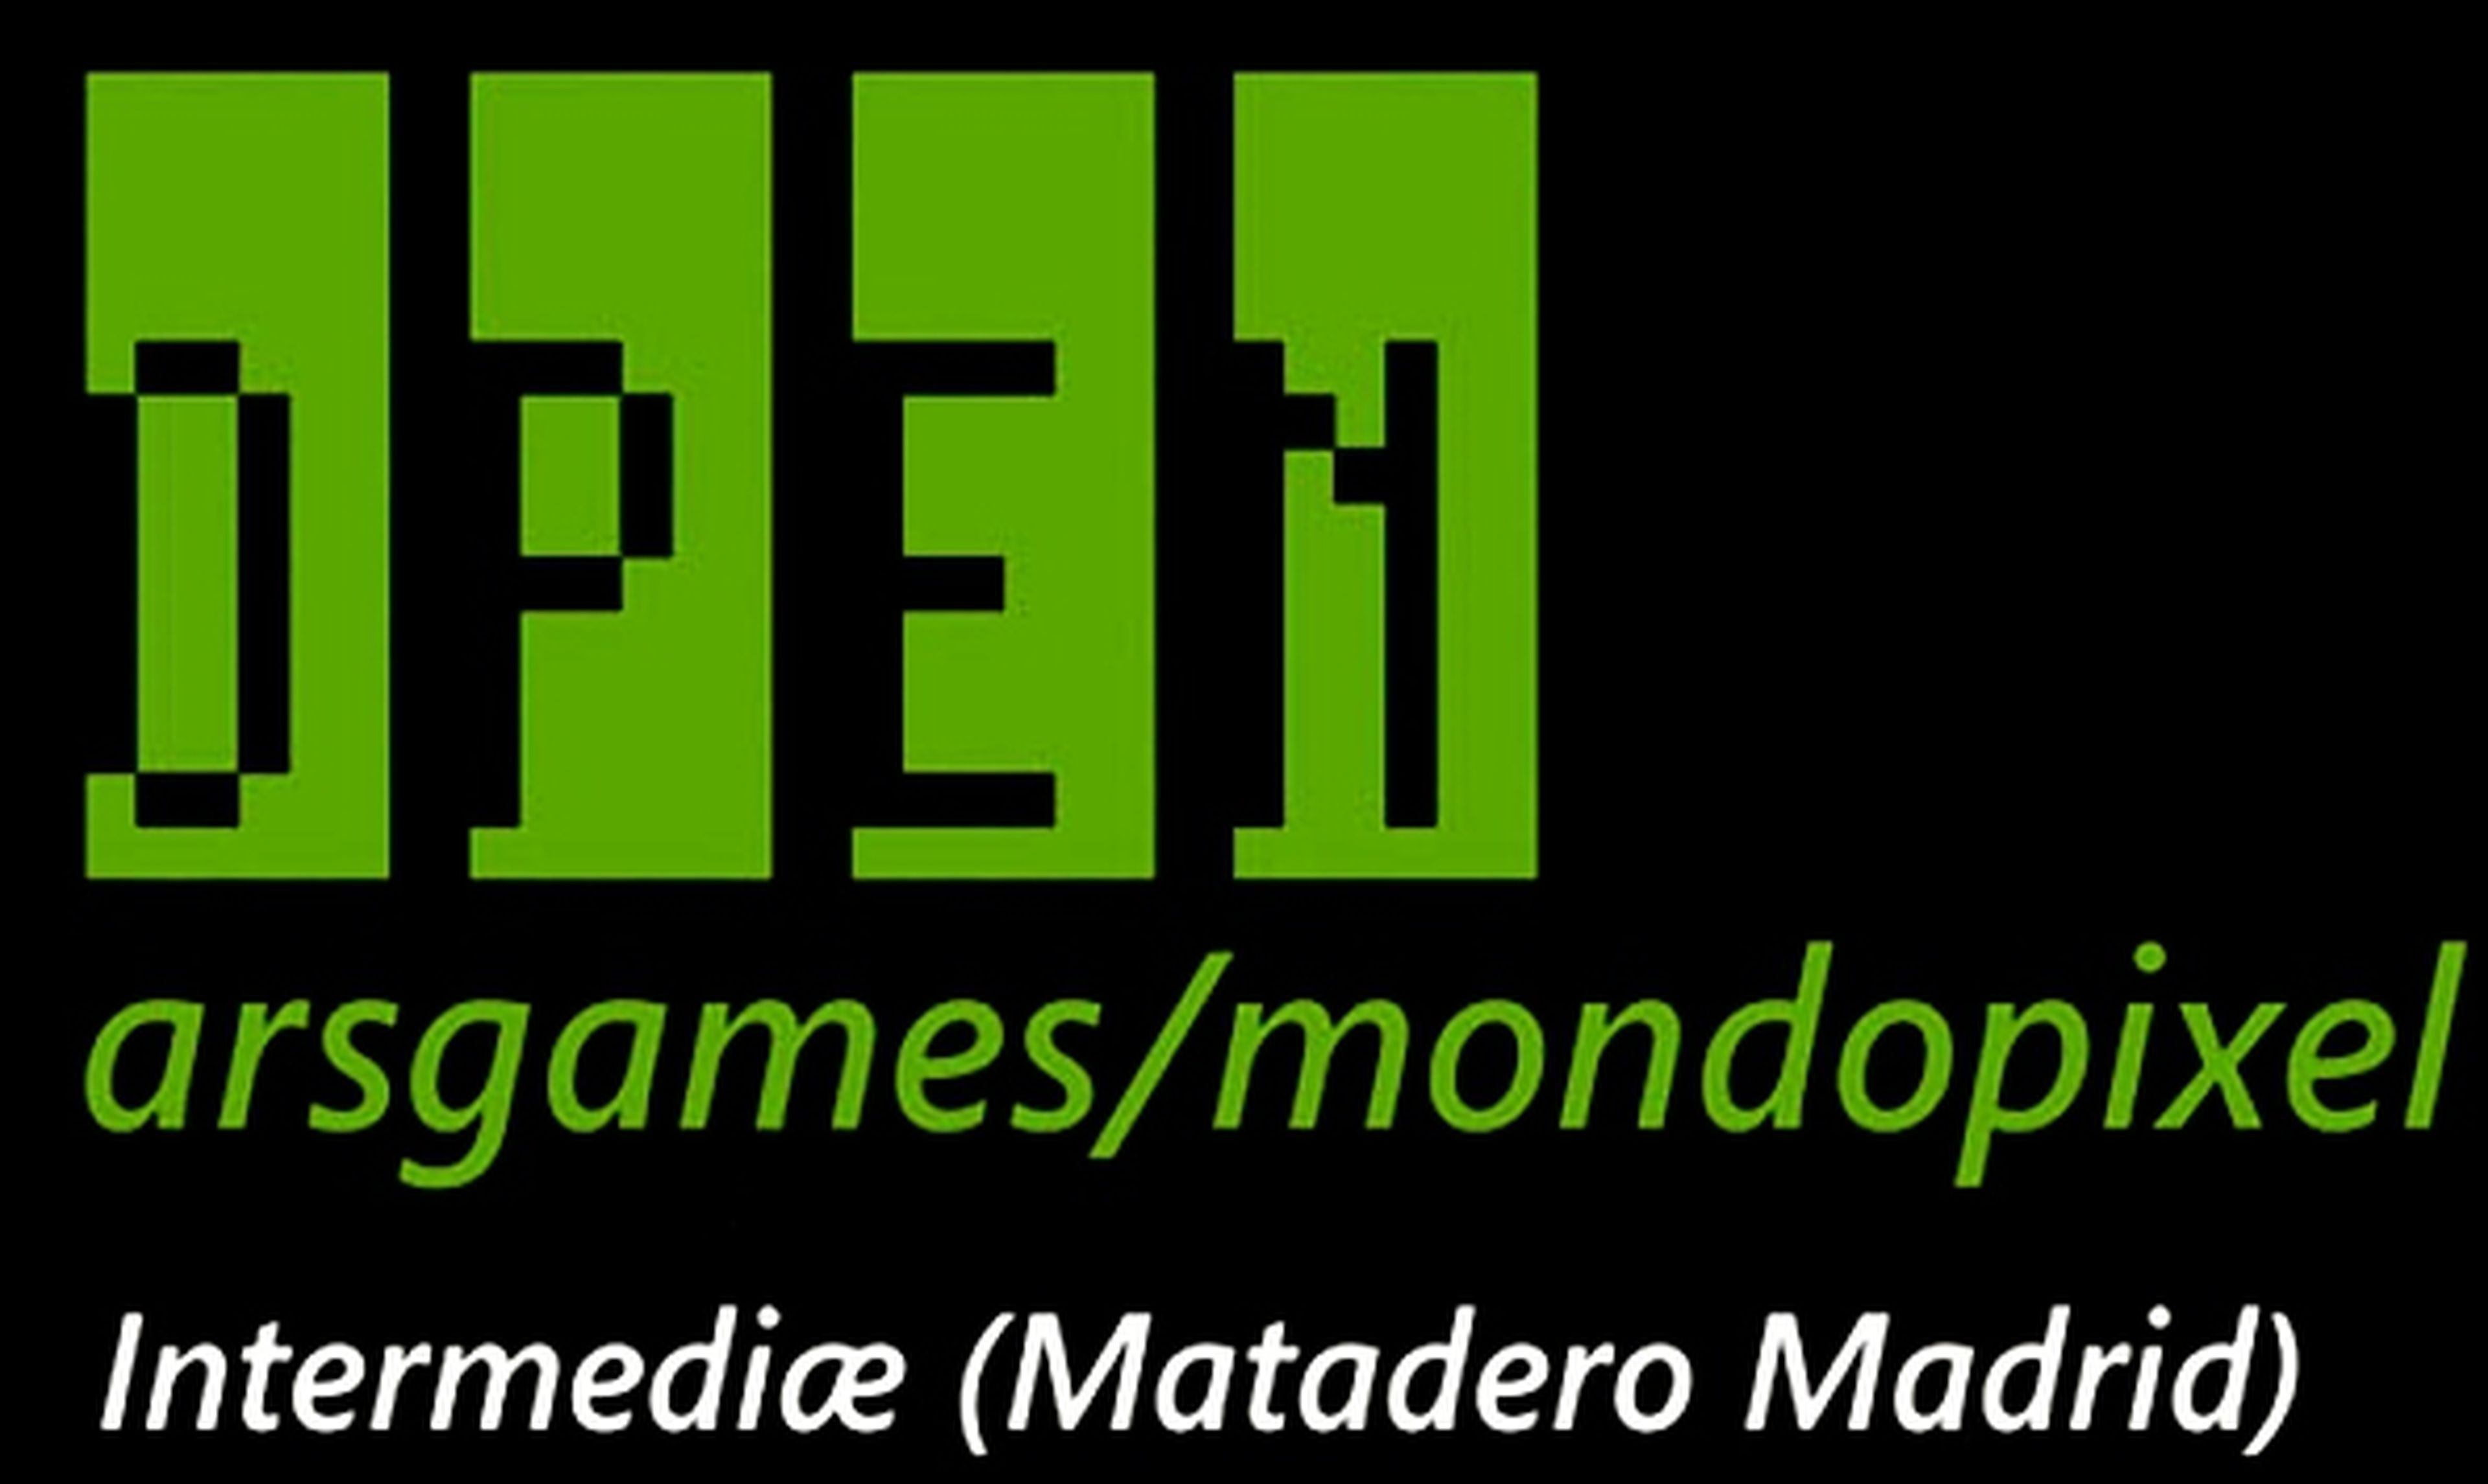 Hoy abre Open Arsgames Mondopixel